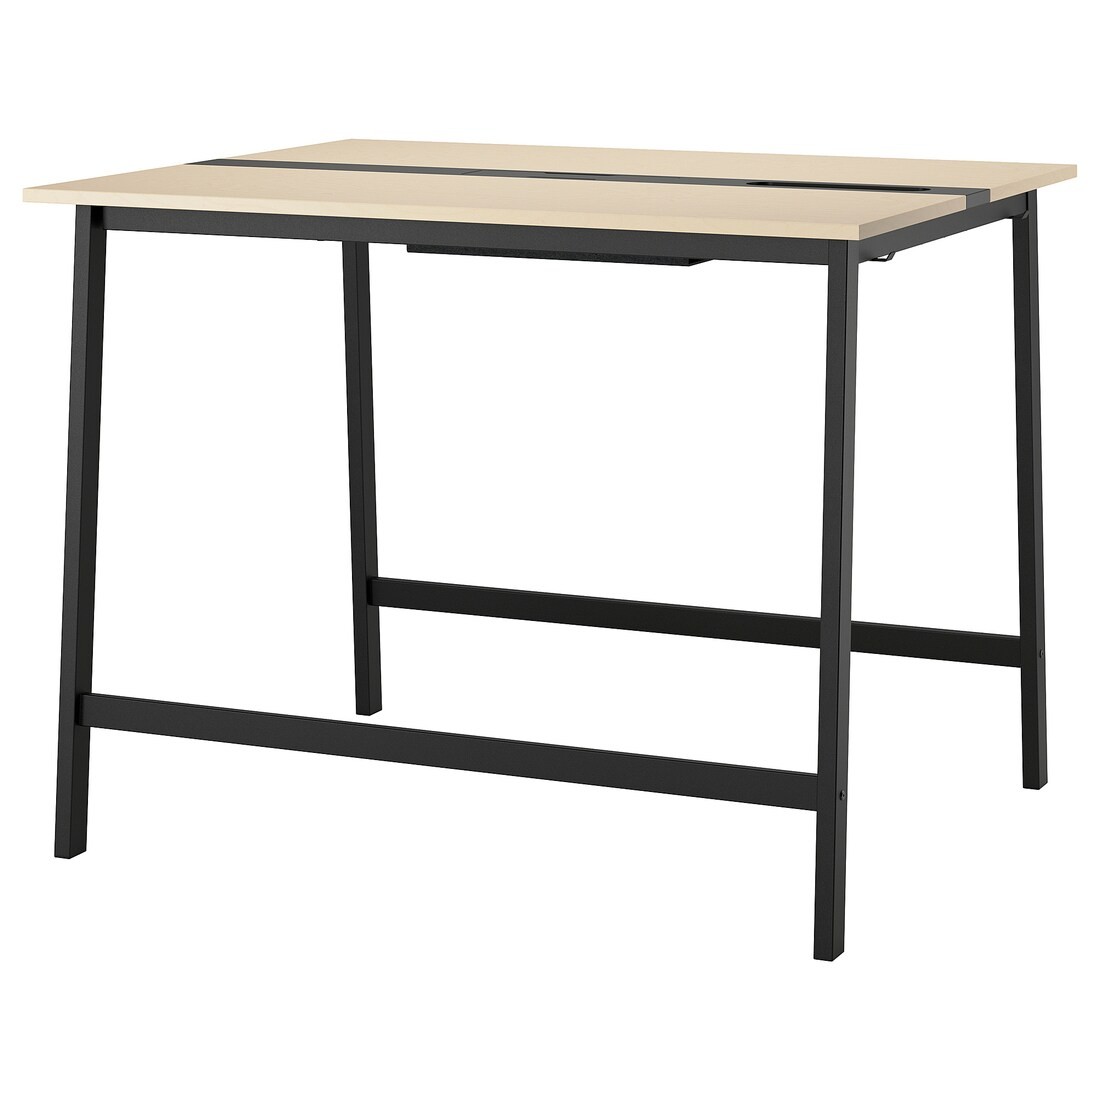 MITTZON стіл для конференцій, okl береза / чорний, 140x108x105 см